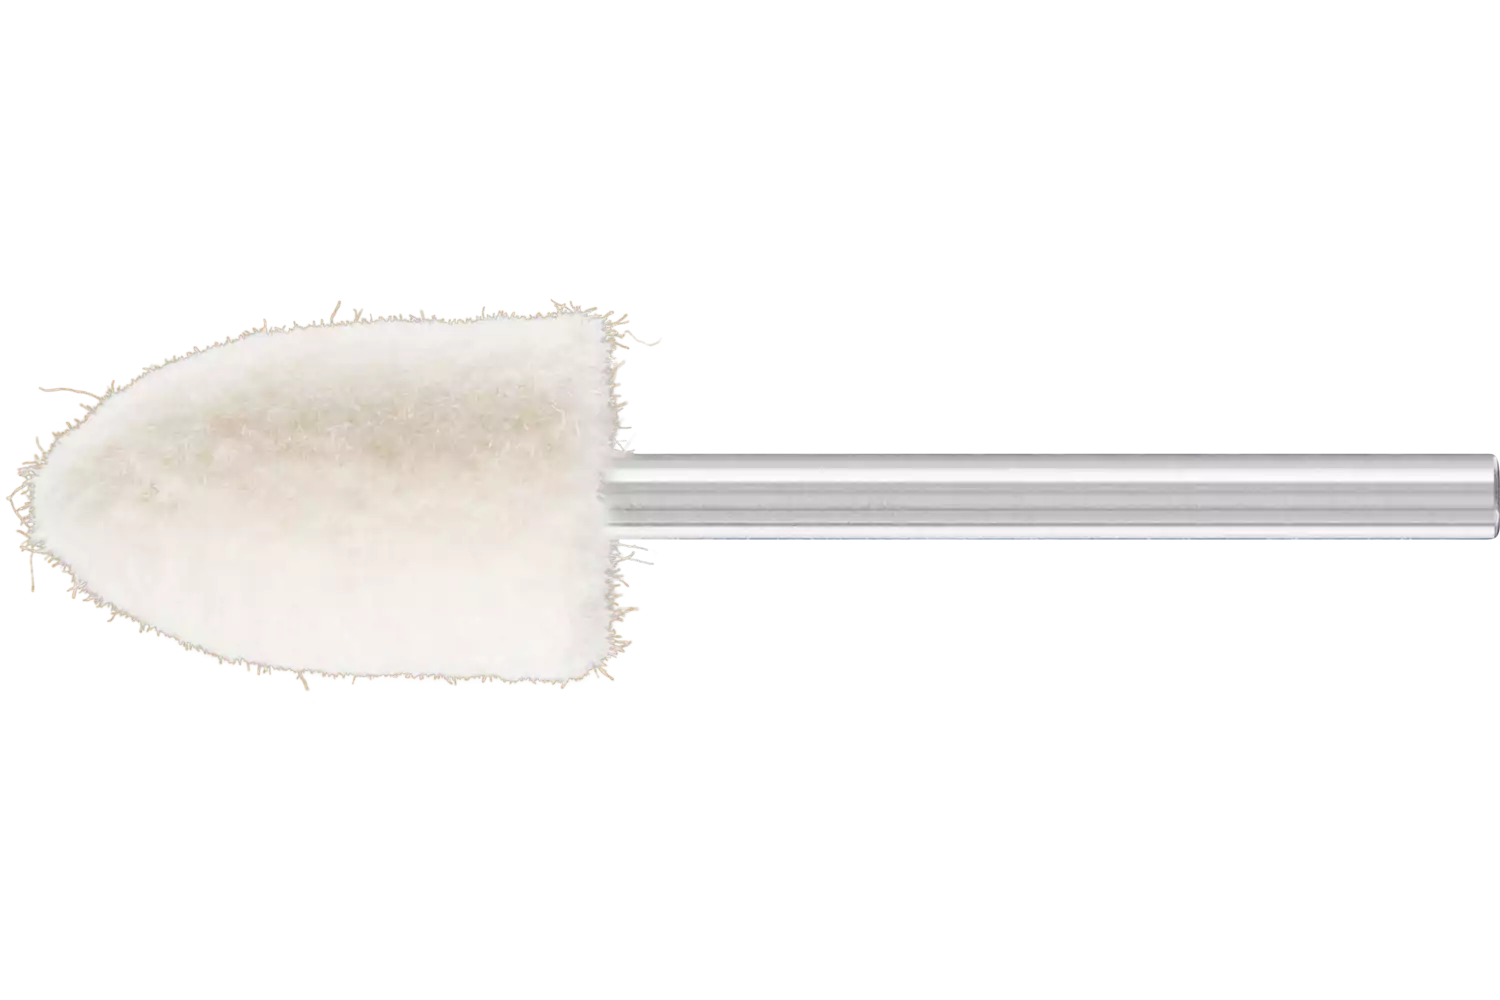 Feltri con gambo per lucidare medio-duri forma a cono appuntito Ø 12x18 mm, gambo Ø 3 mm 1